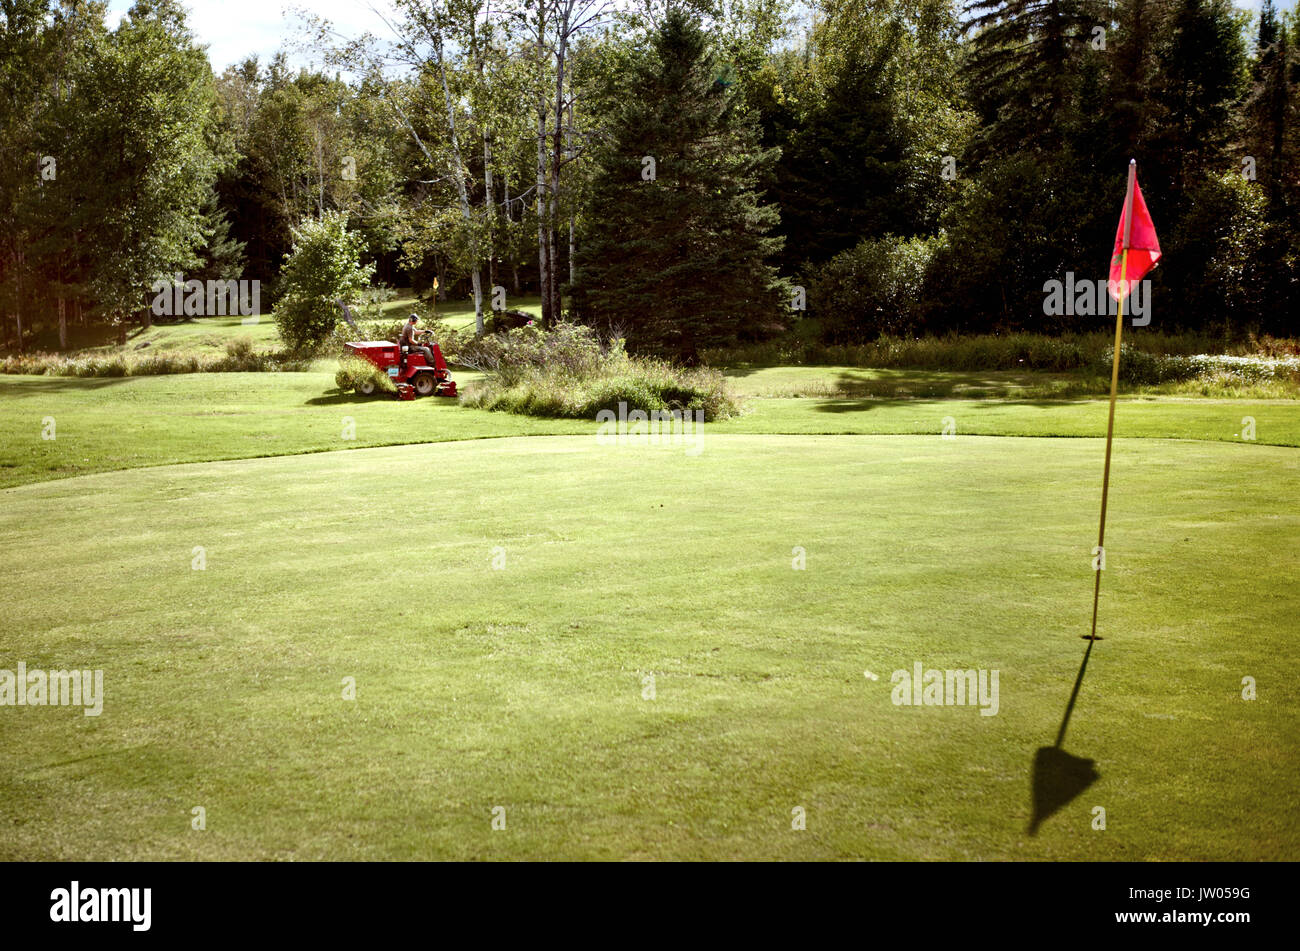 Rocky, der alleinige Eigentümer und Betreiber der Stimmung Meadows Golf Kurs kann gesehen werden, den Rasen zu mähen, um Eins der Grüns am Golfplatz. Â Stockfoto